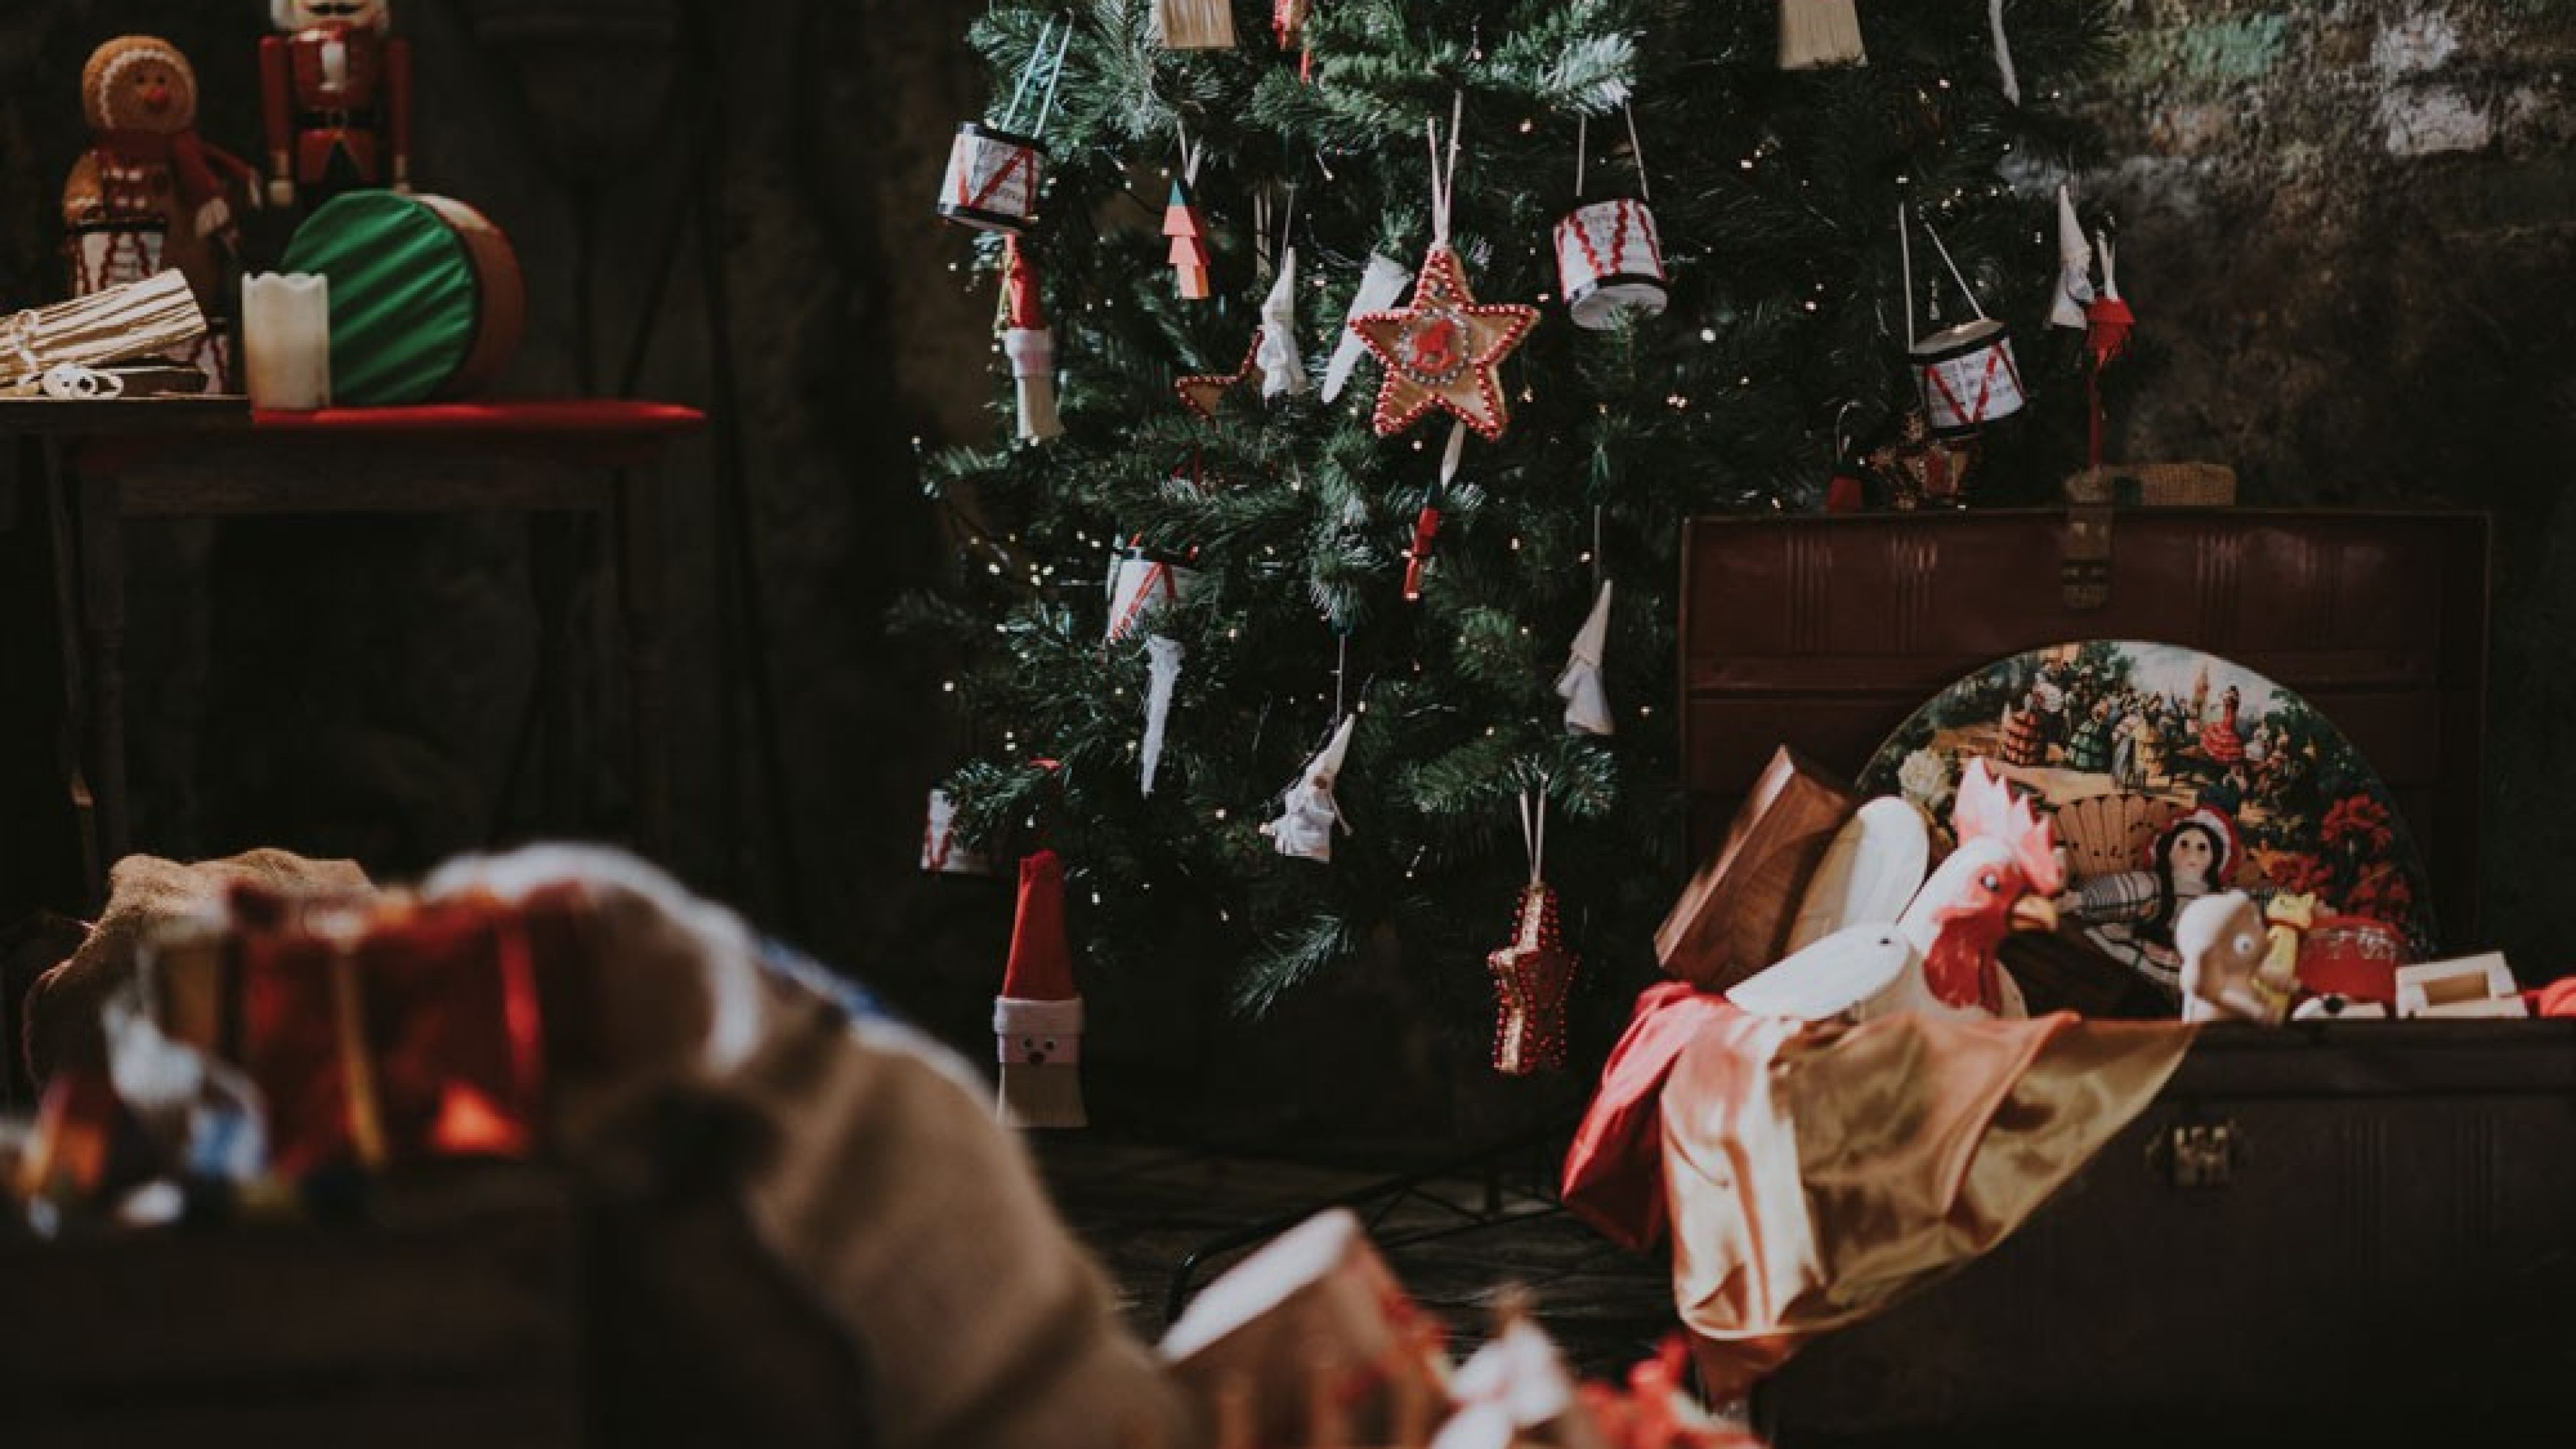 Weihnachtsbaum mit Weihnachtsschmuck und Geschenken